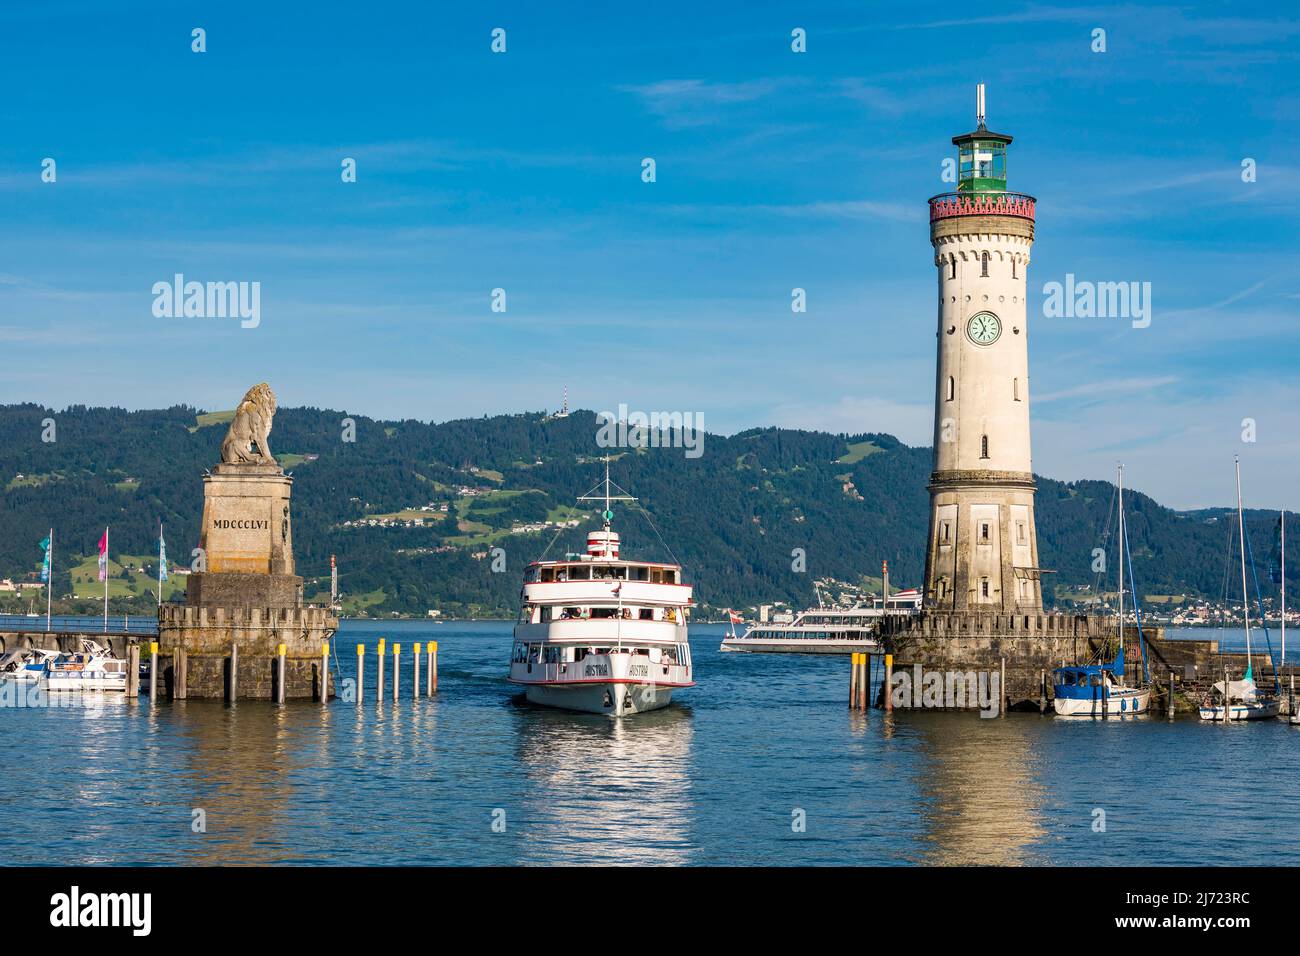 Ausflugsschiff in der Hafeneinfahrt, Bayerischer Loewe, Leuchtturm, Hafen, Lindau, Bayern, Deutschland Stock Photo